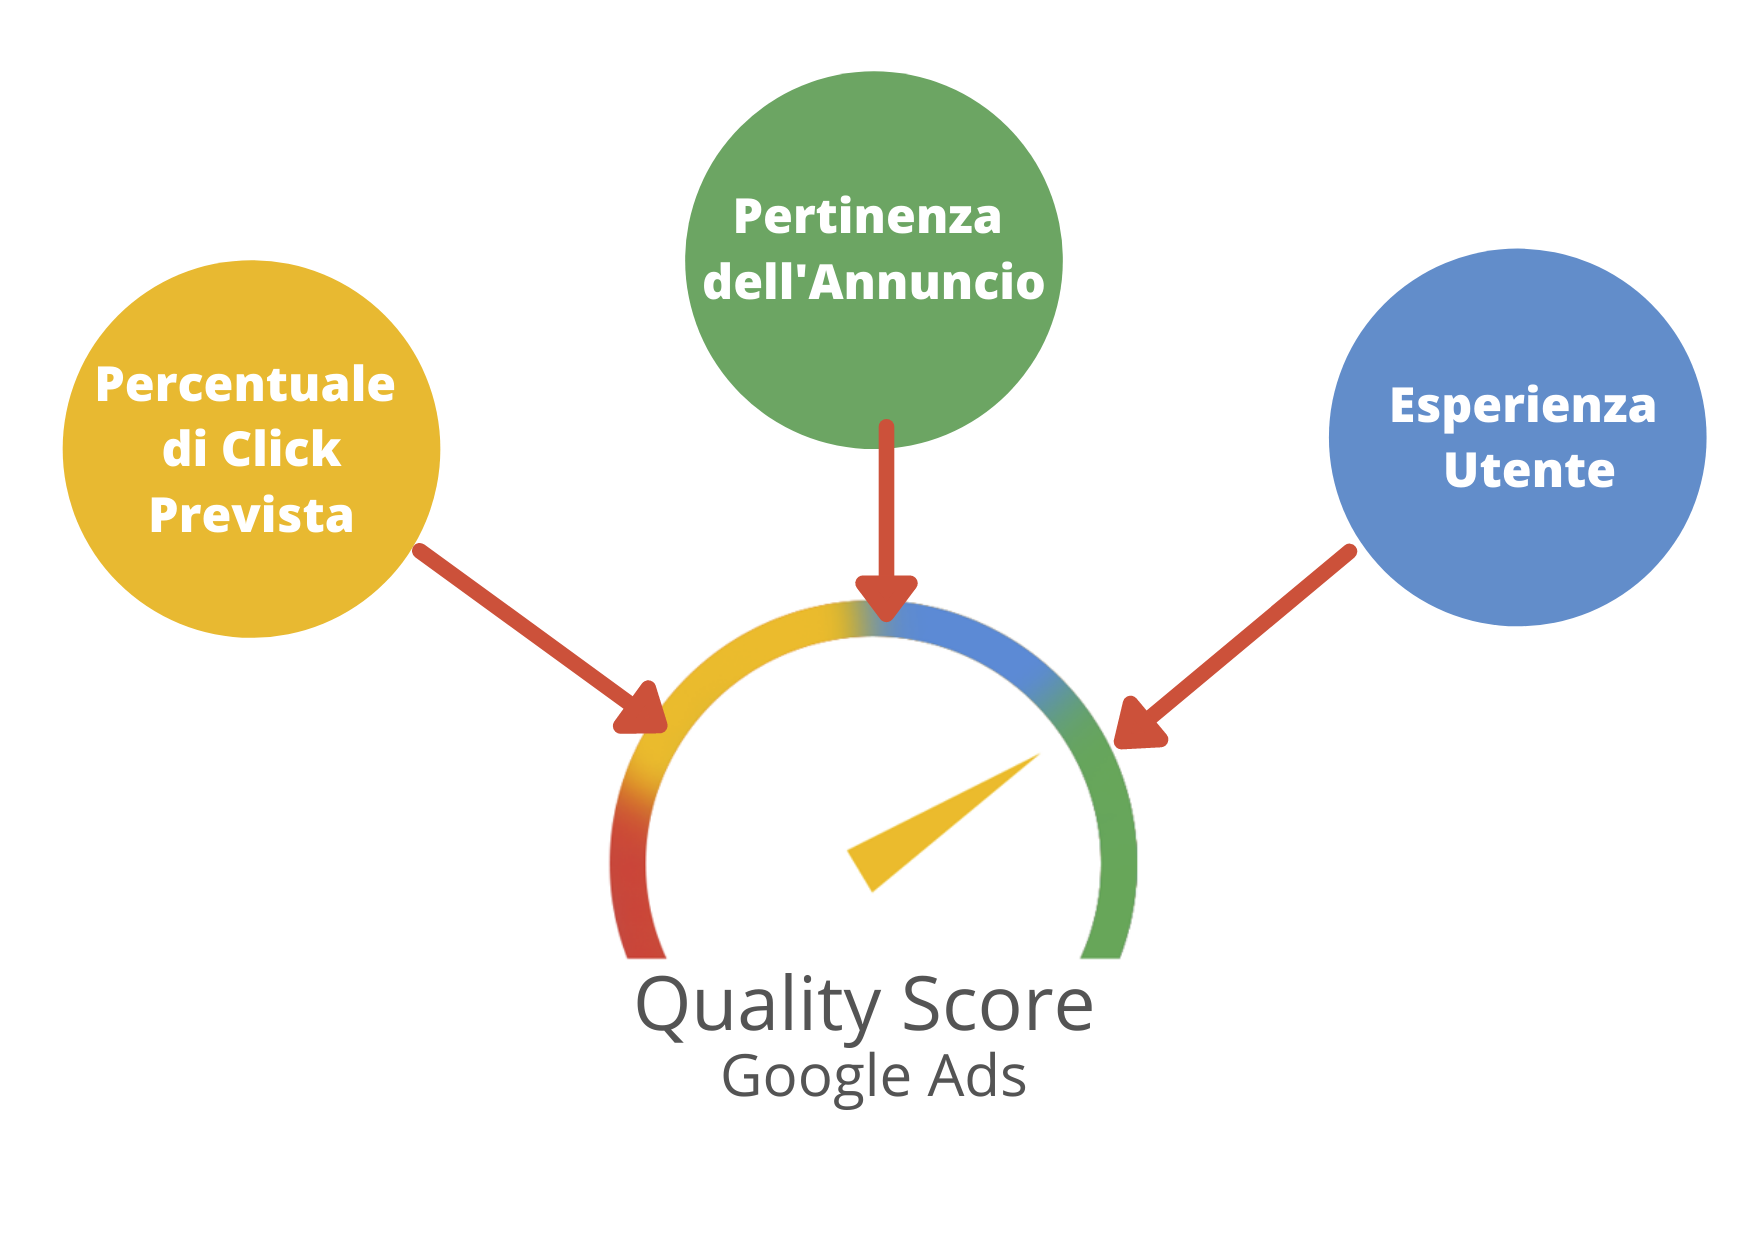 Come funziona il Quality Score di Google Ads? - come si calcola il Quality Score